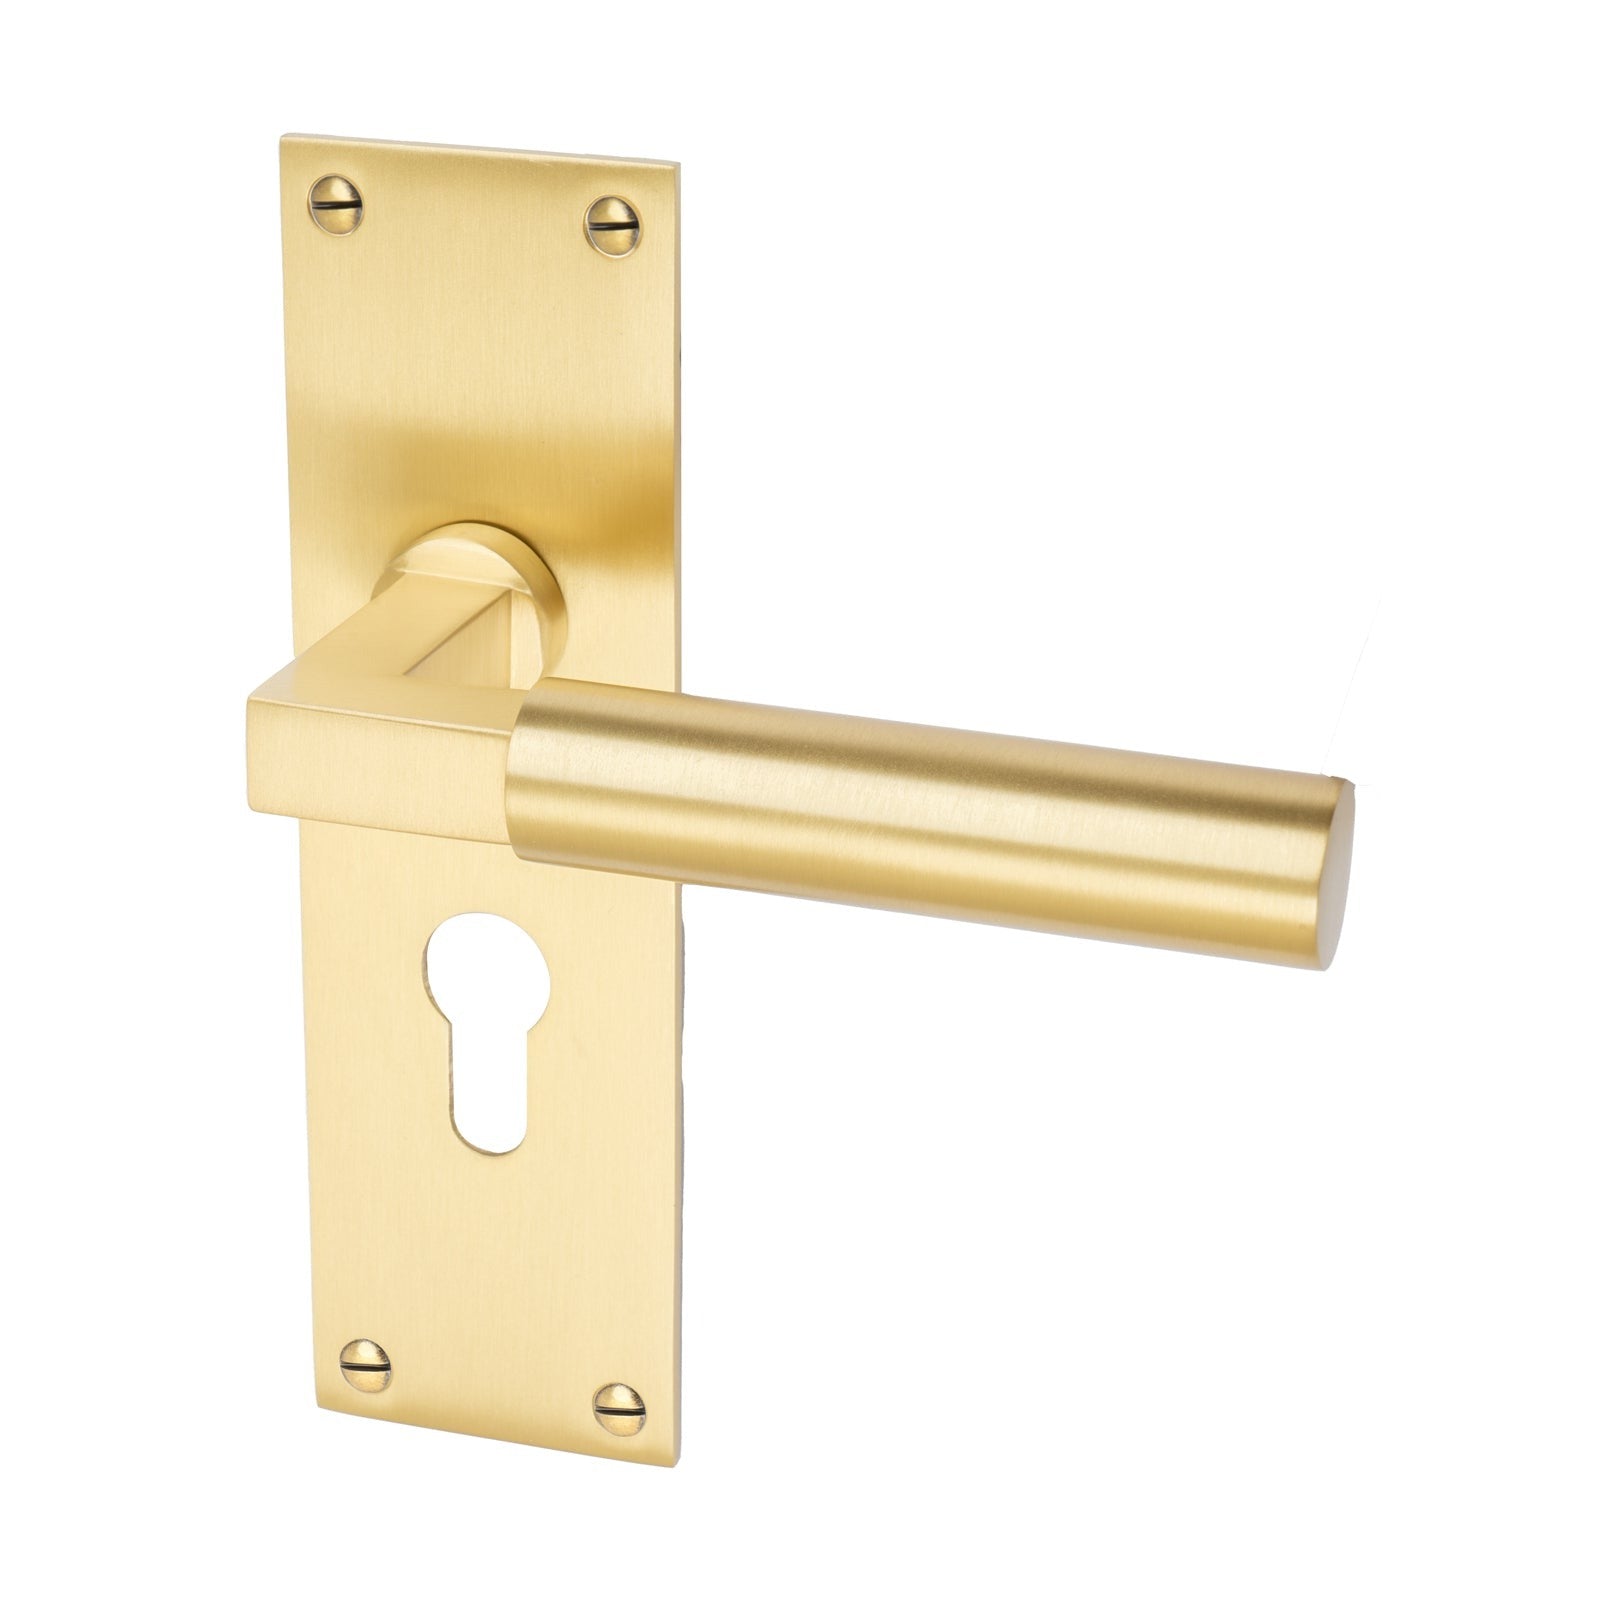 Bauhaus Door Handles On Plate Euro Lock Handle in Satin Brass 